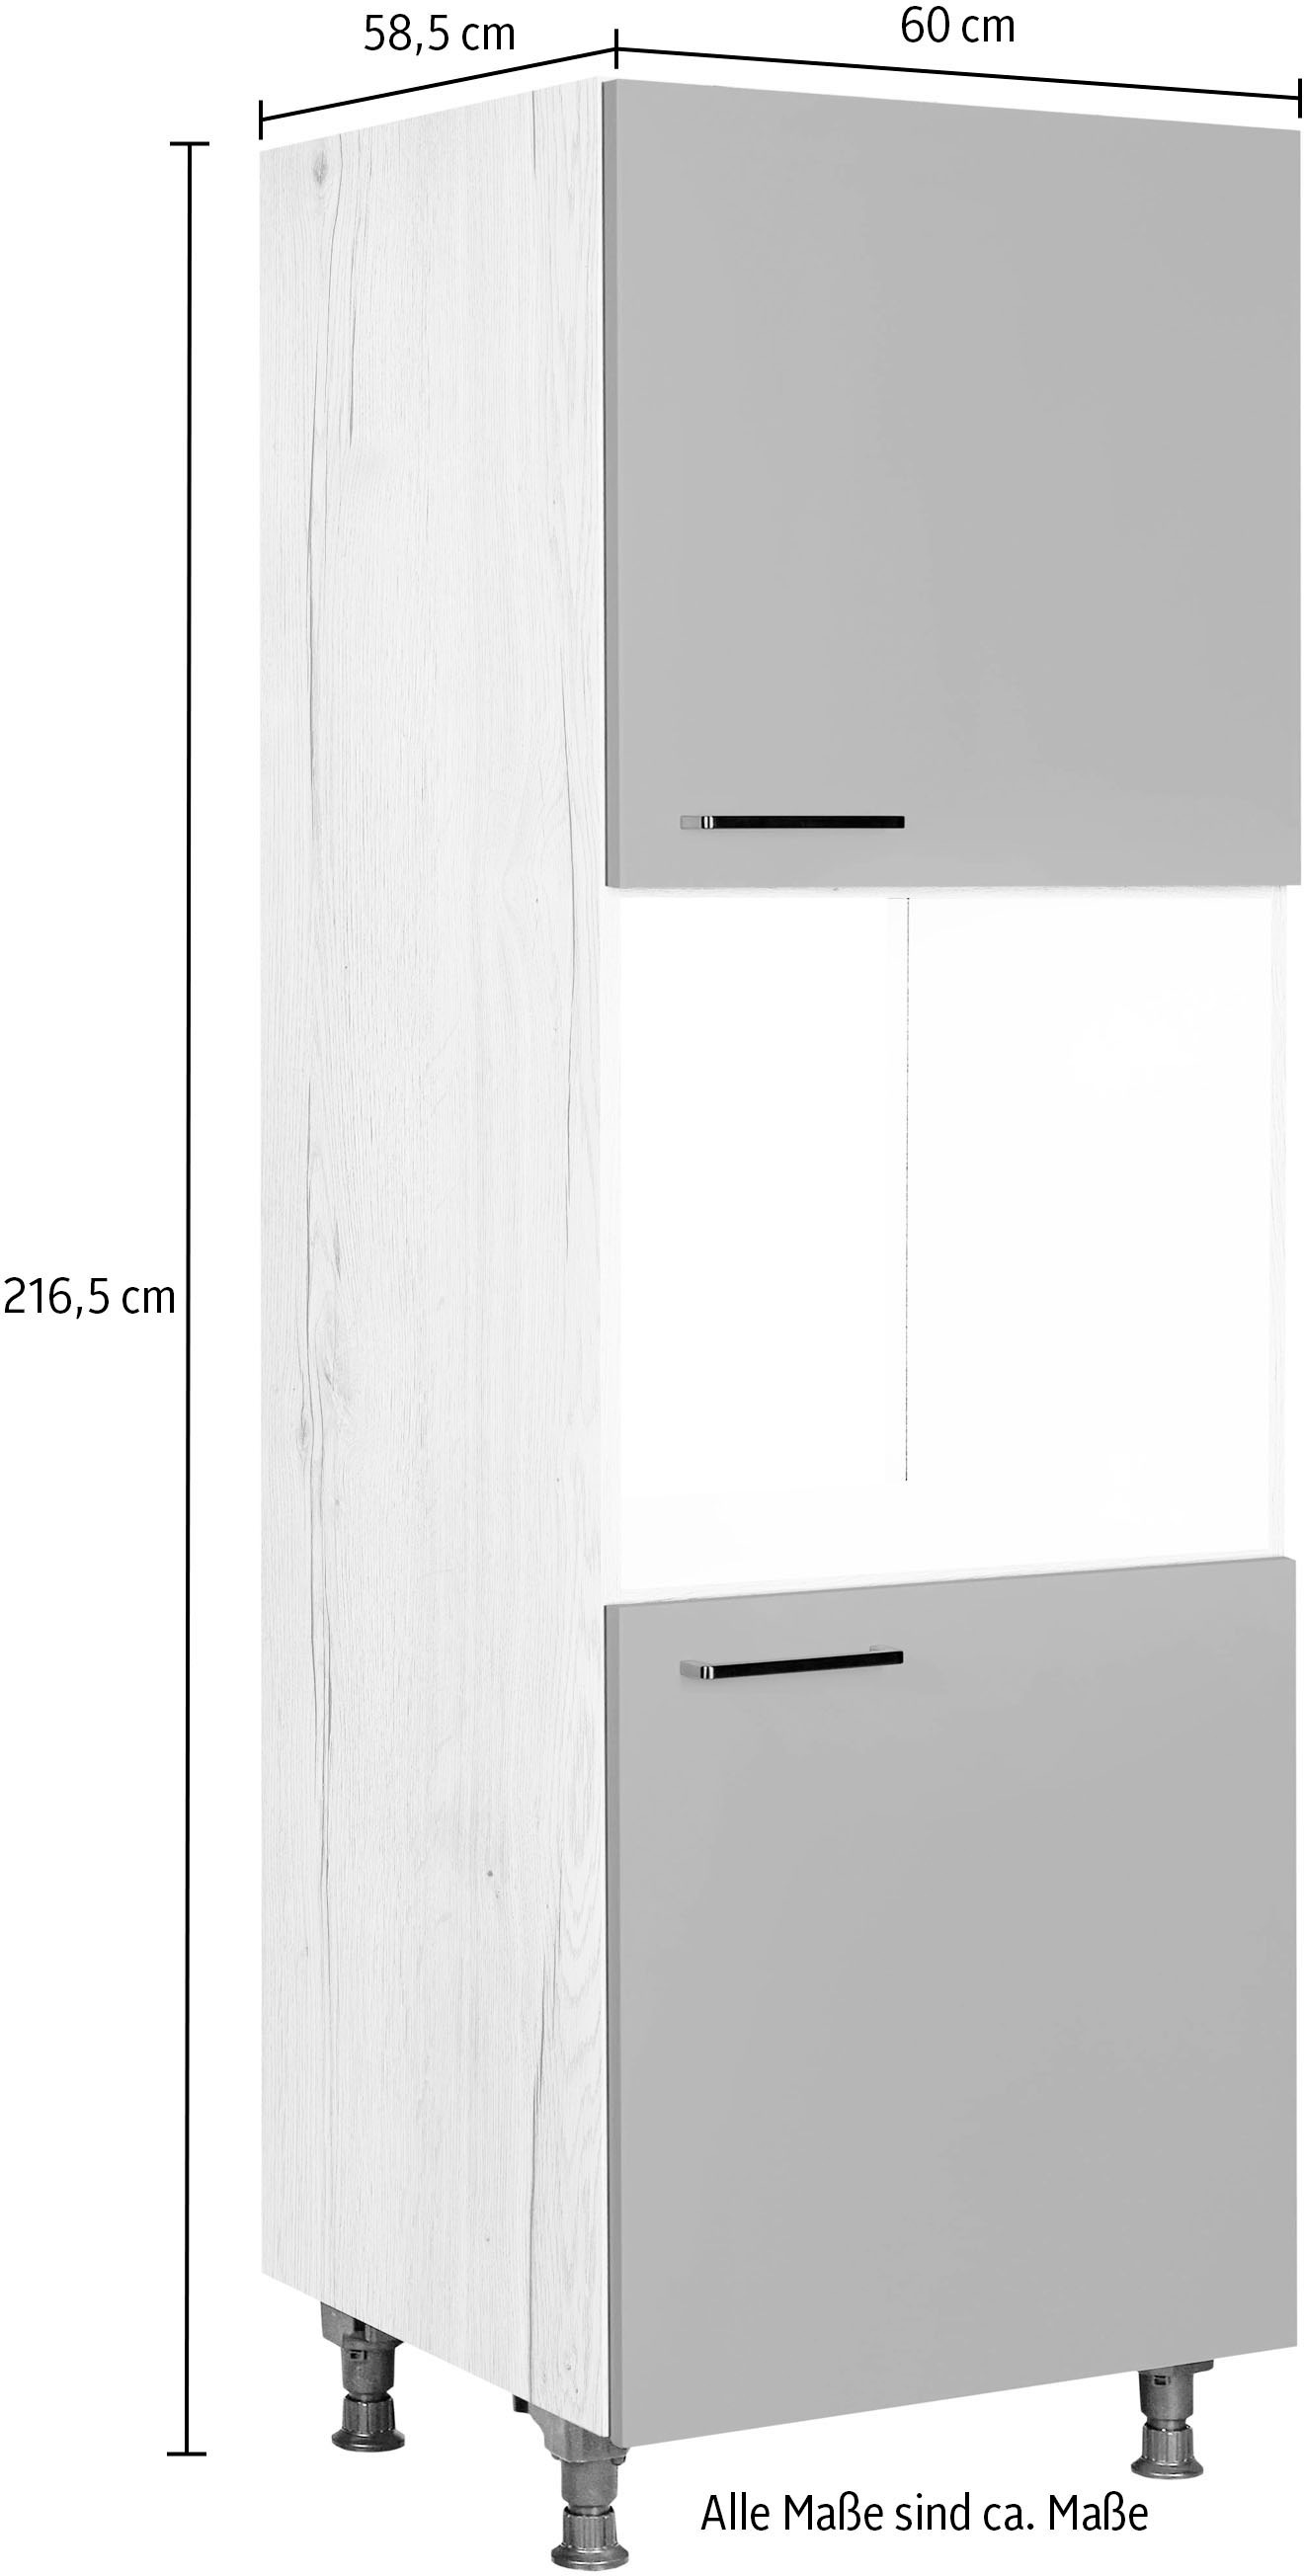 nobilia® Herdumbauschrank »"Easytouch", Ausrichtung wählbar, mit zwei zusätzlichen Türen,«, vormontiert, Breite/Höhe: 60/167,8 cm